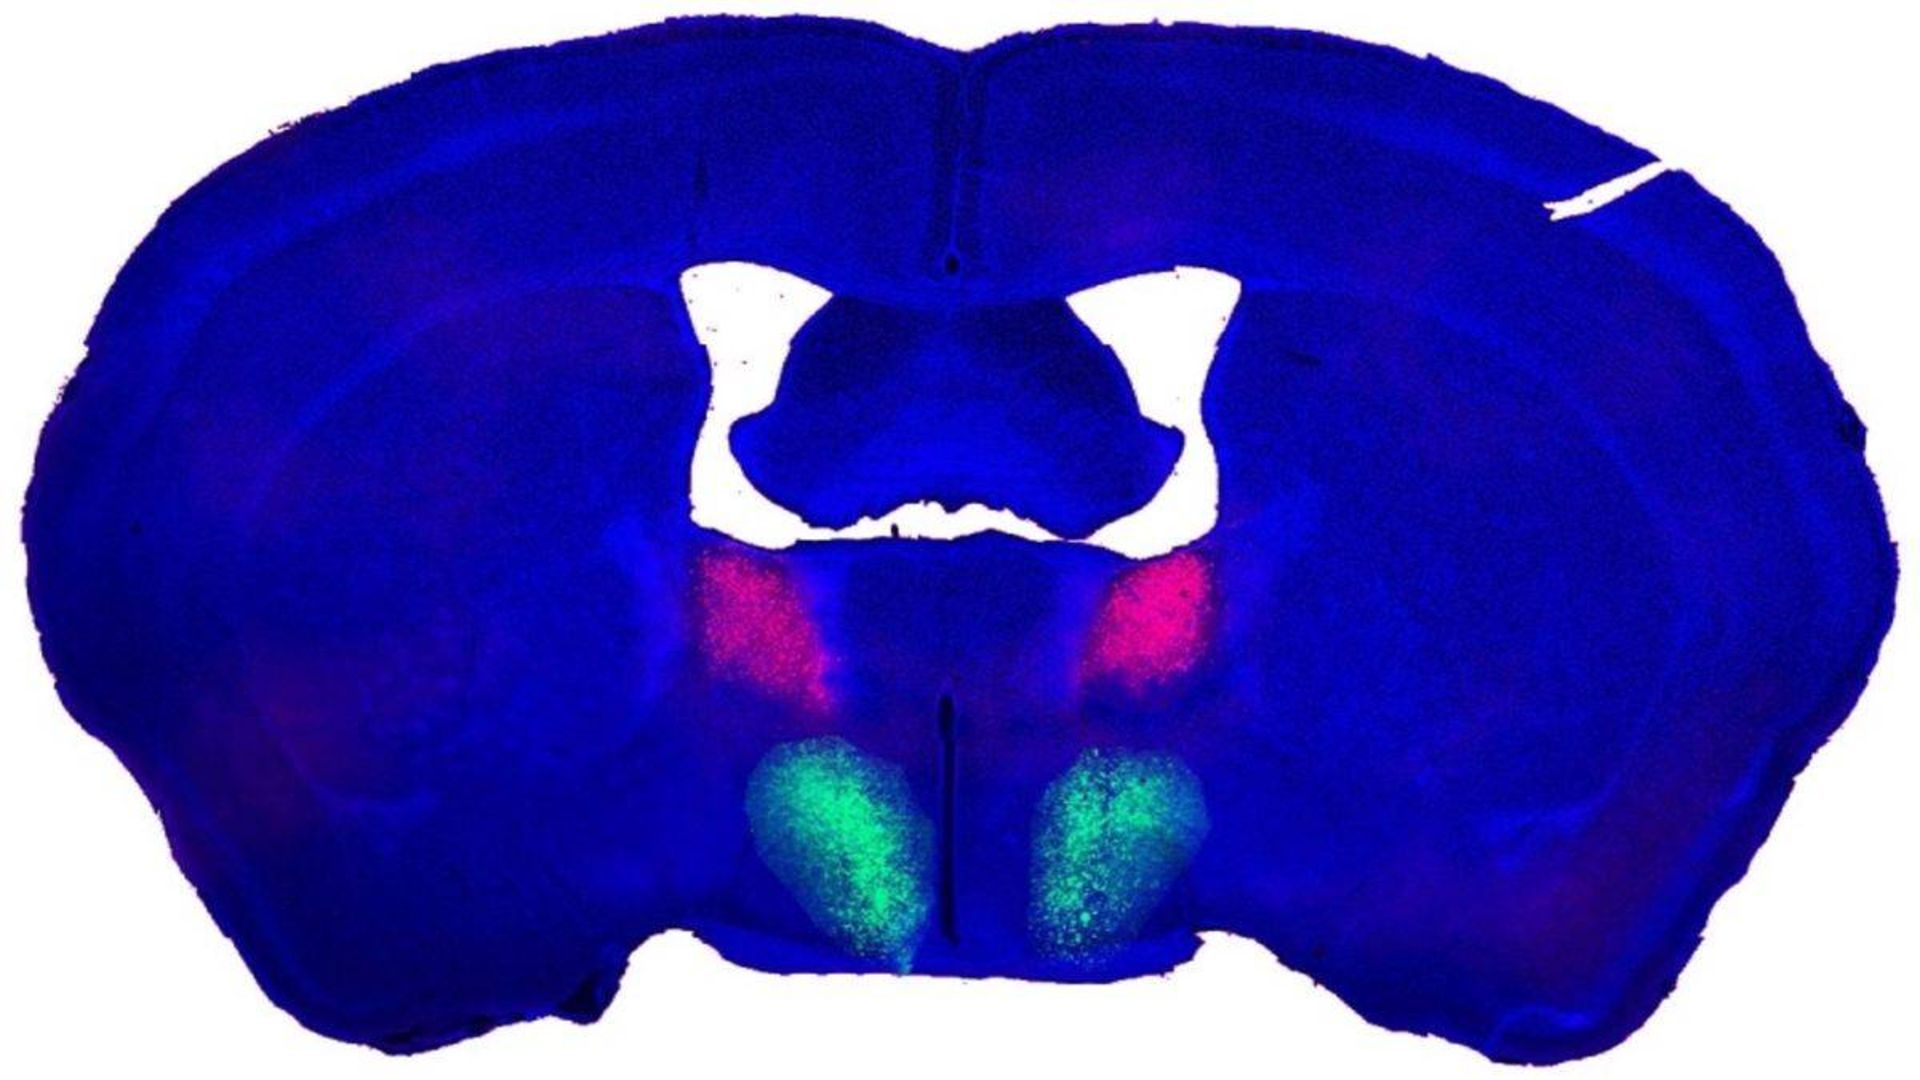 اتصال ارگانوئید به مغز موش